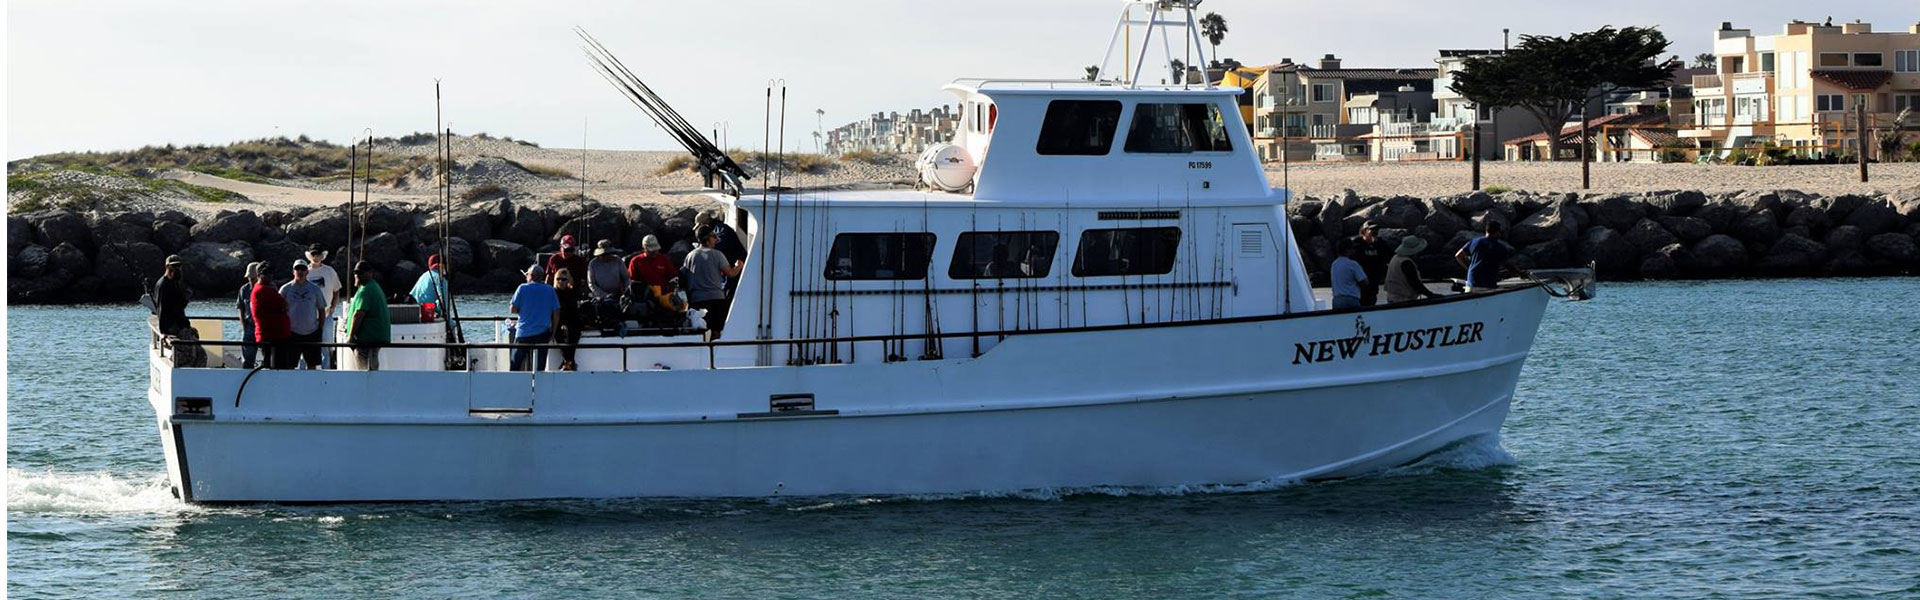 Hooks Sportfishing vessel 'New Hustler' moves through the harbor